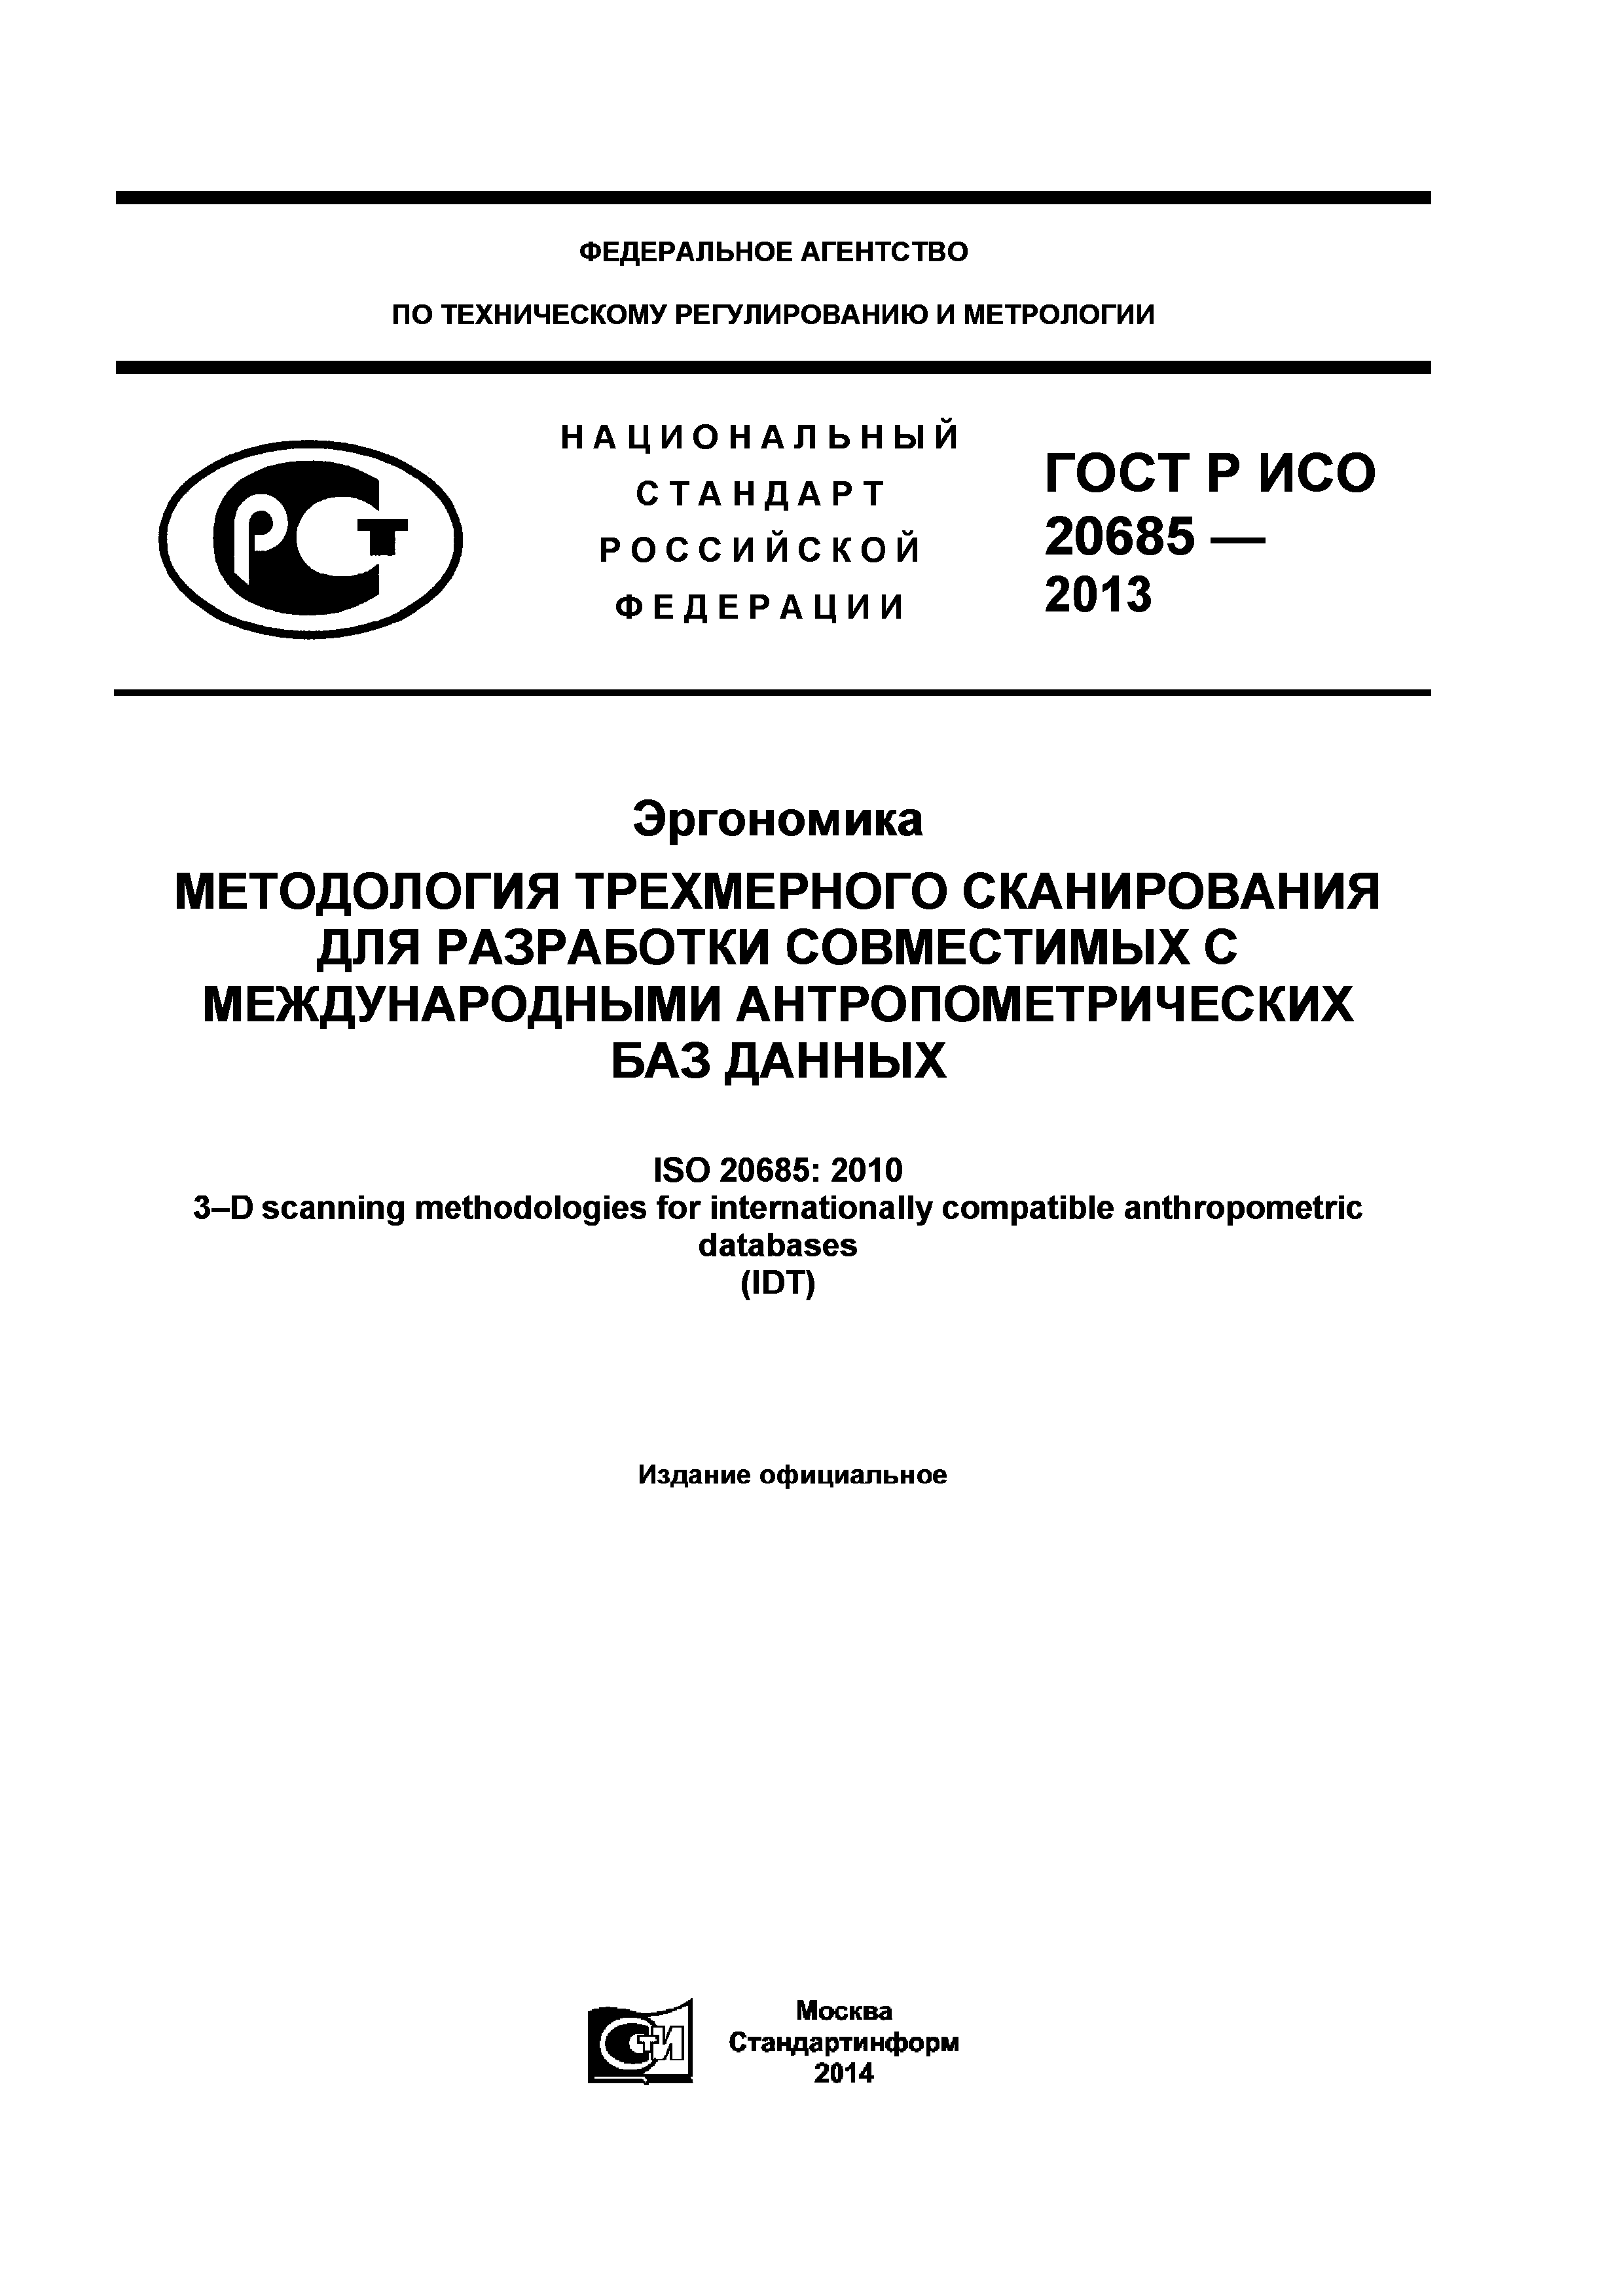 ГОСТ Р ИСО 20685-2013